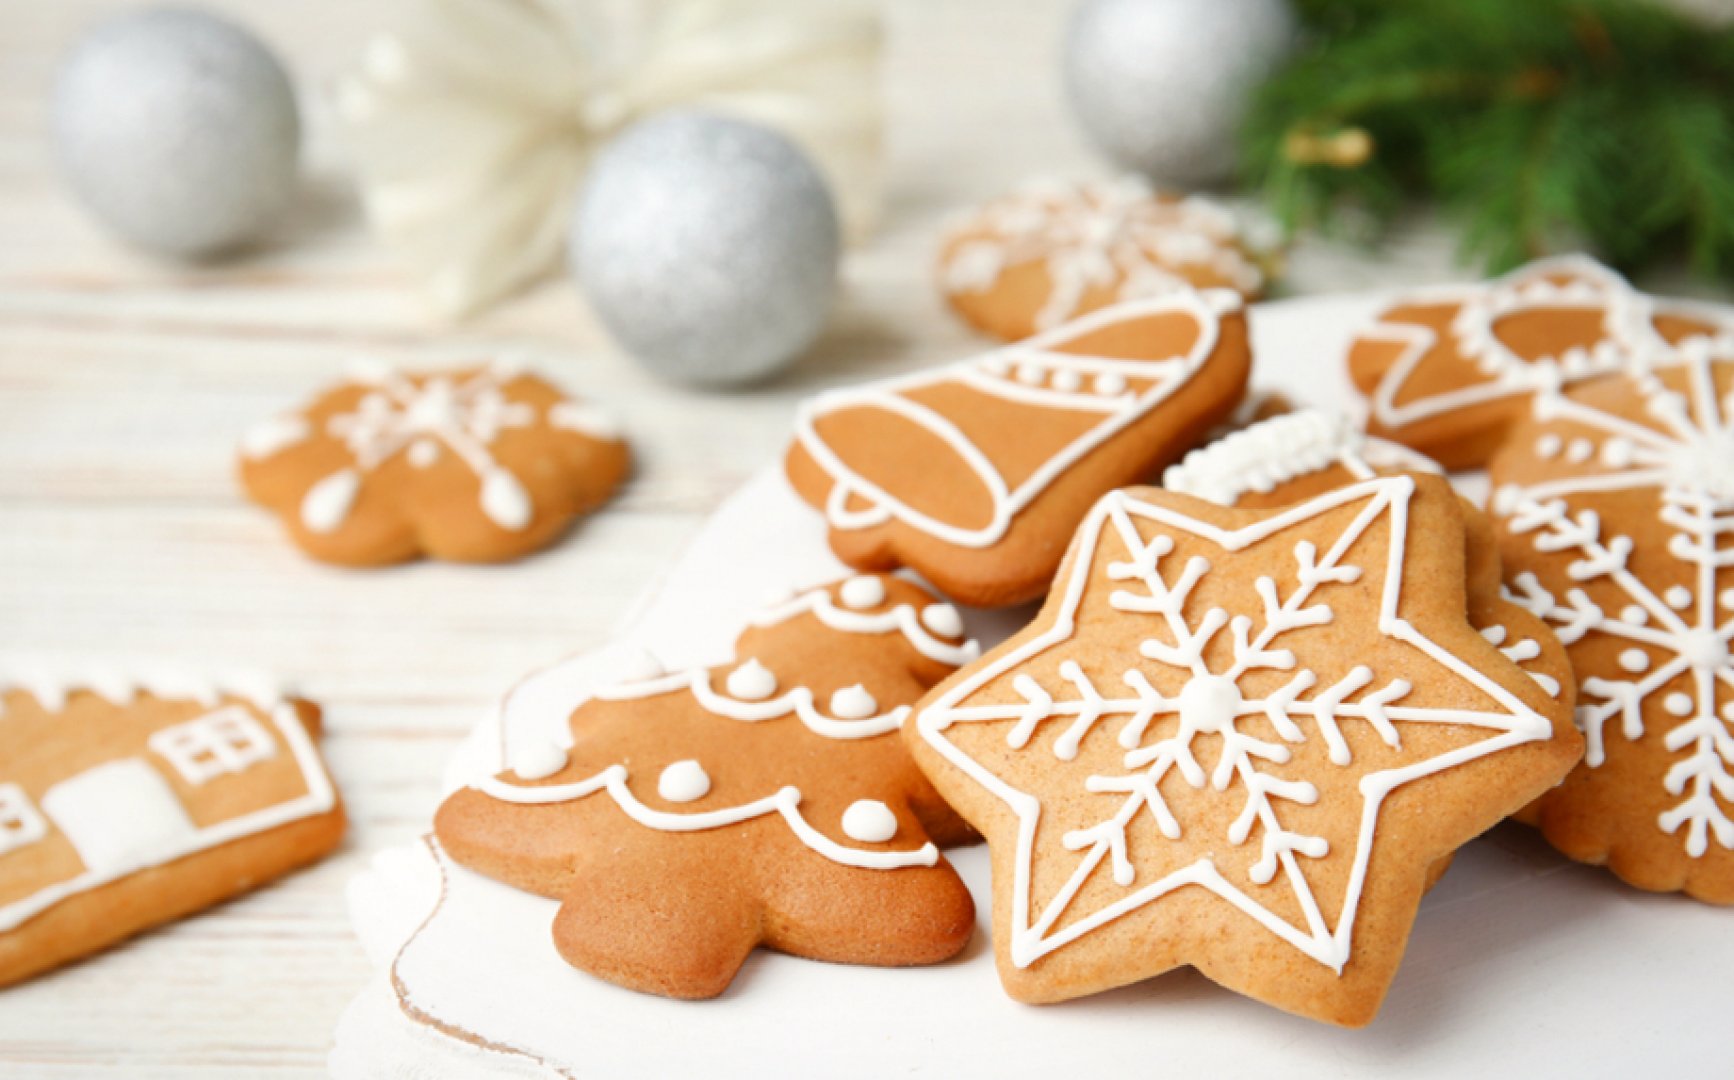 Kalėdiniai sausainiai - kaip iškepti pačius skaniausius ir kaip juos  puošti? Pasakojame žingsnis po žingsnio! | La Maistas